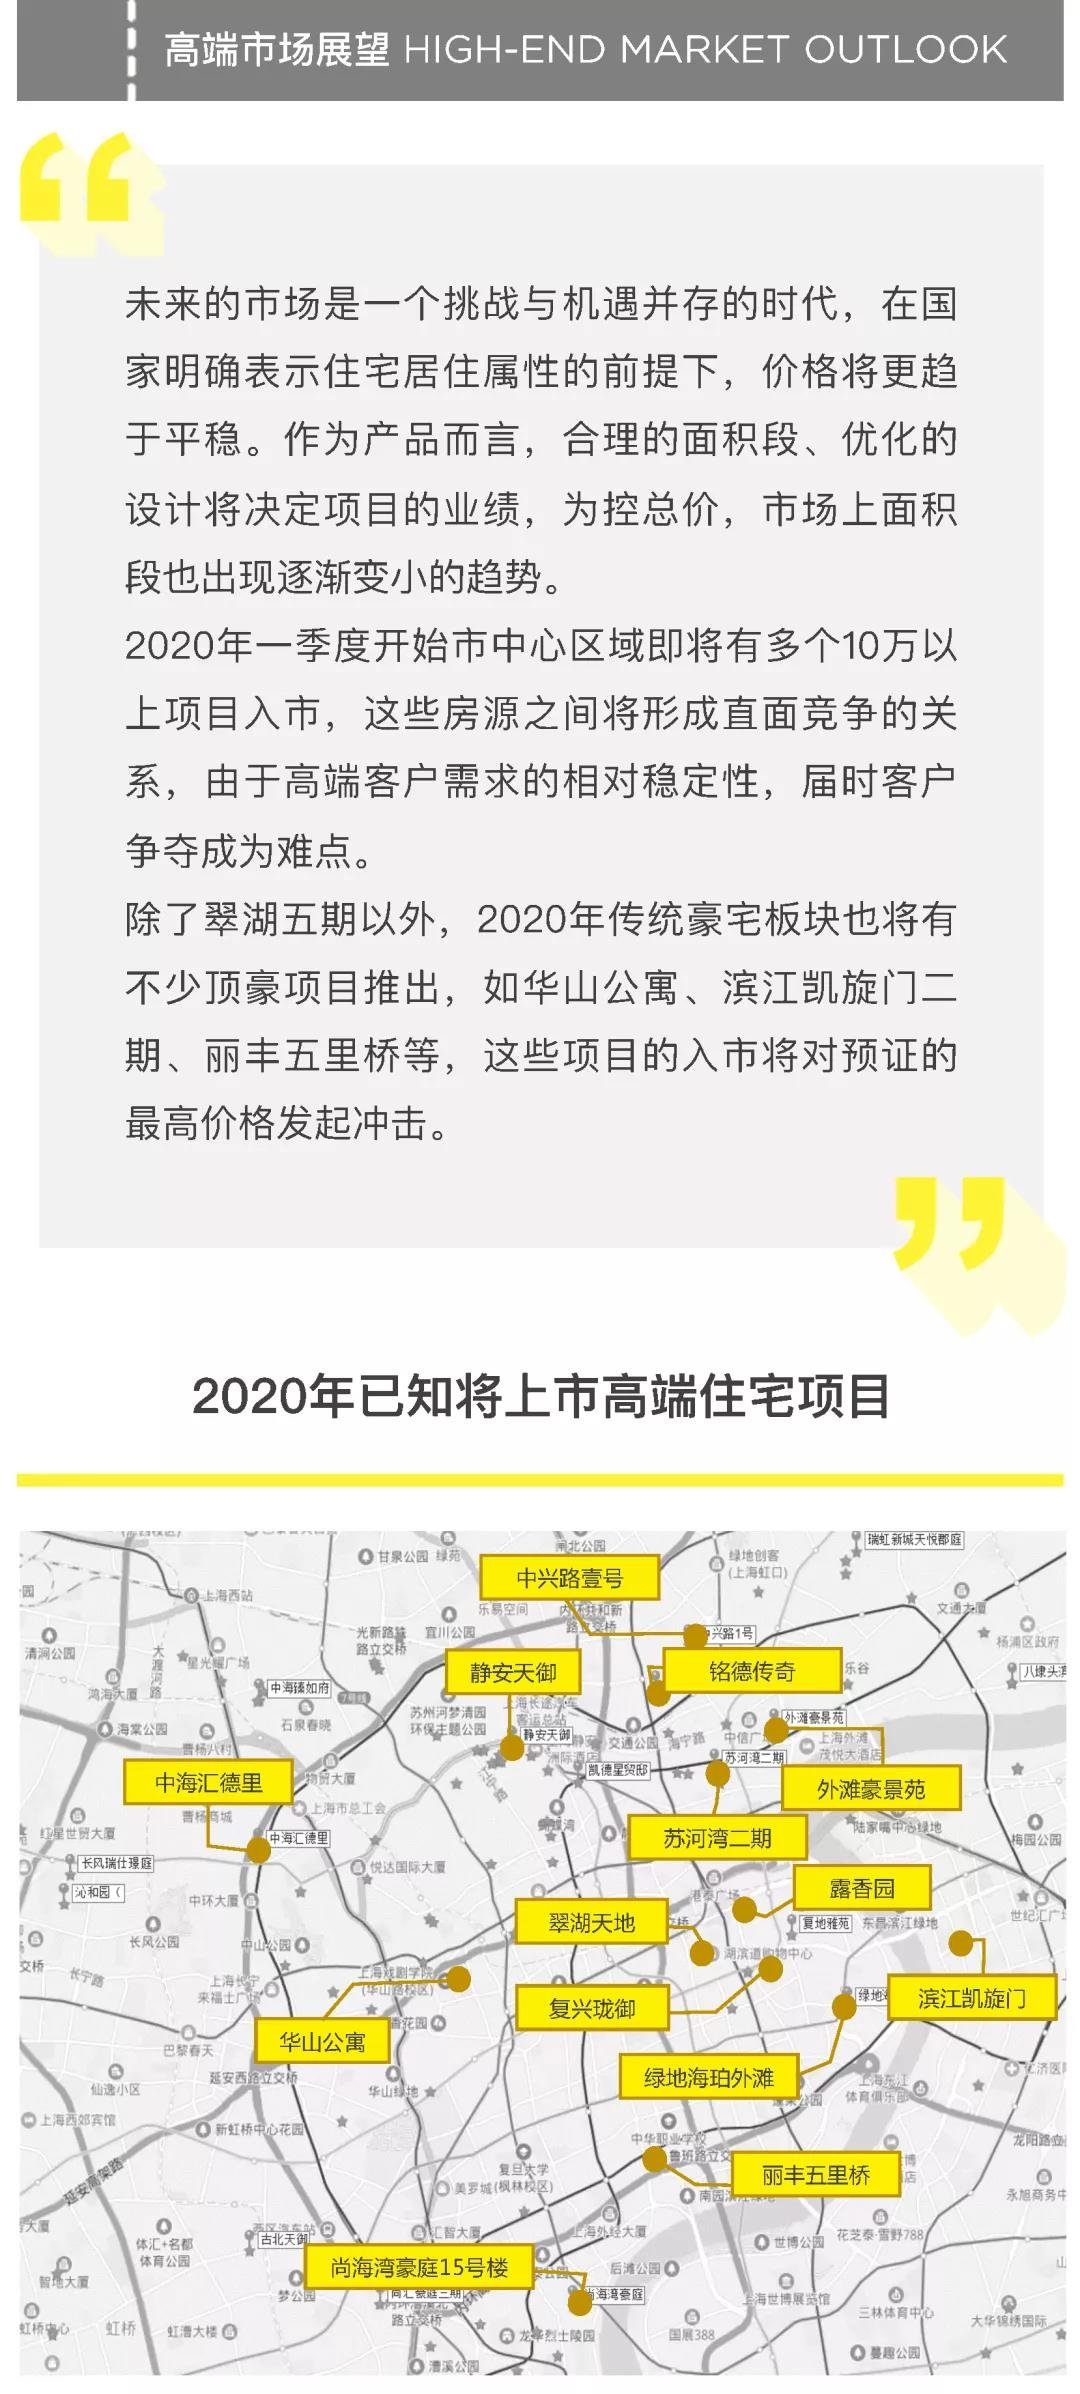 2019 年报 | Savills RS上海高端住宅市场年报